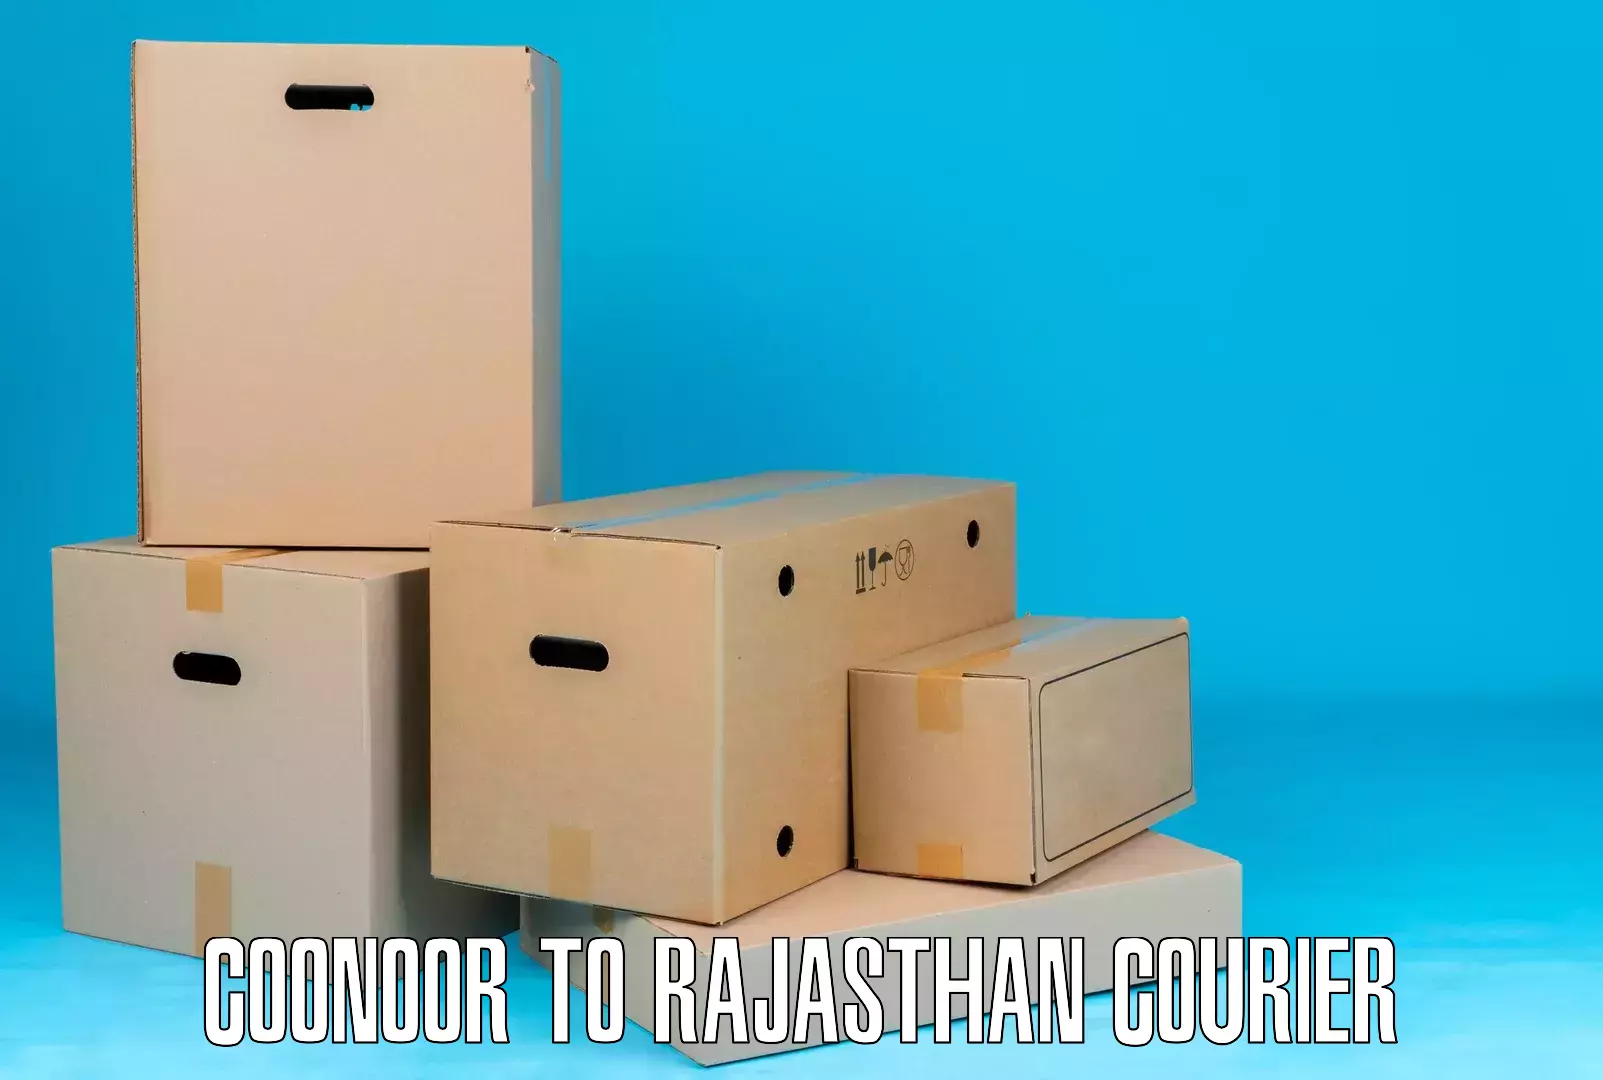 24/7 courier service Coonoor to Sujangarh